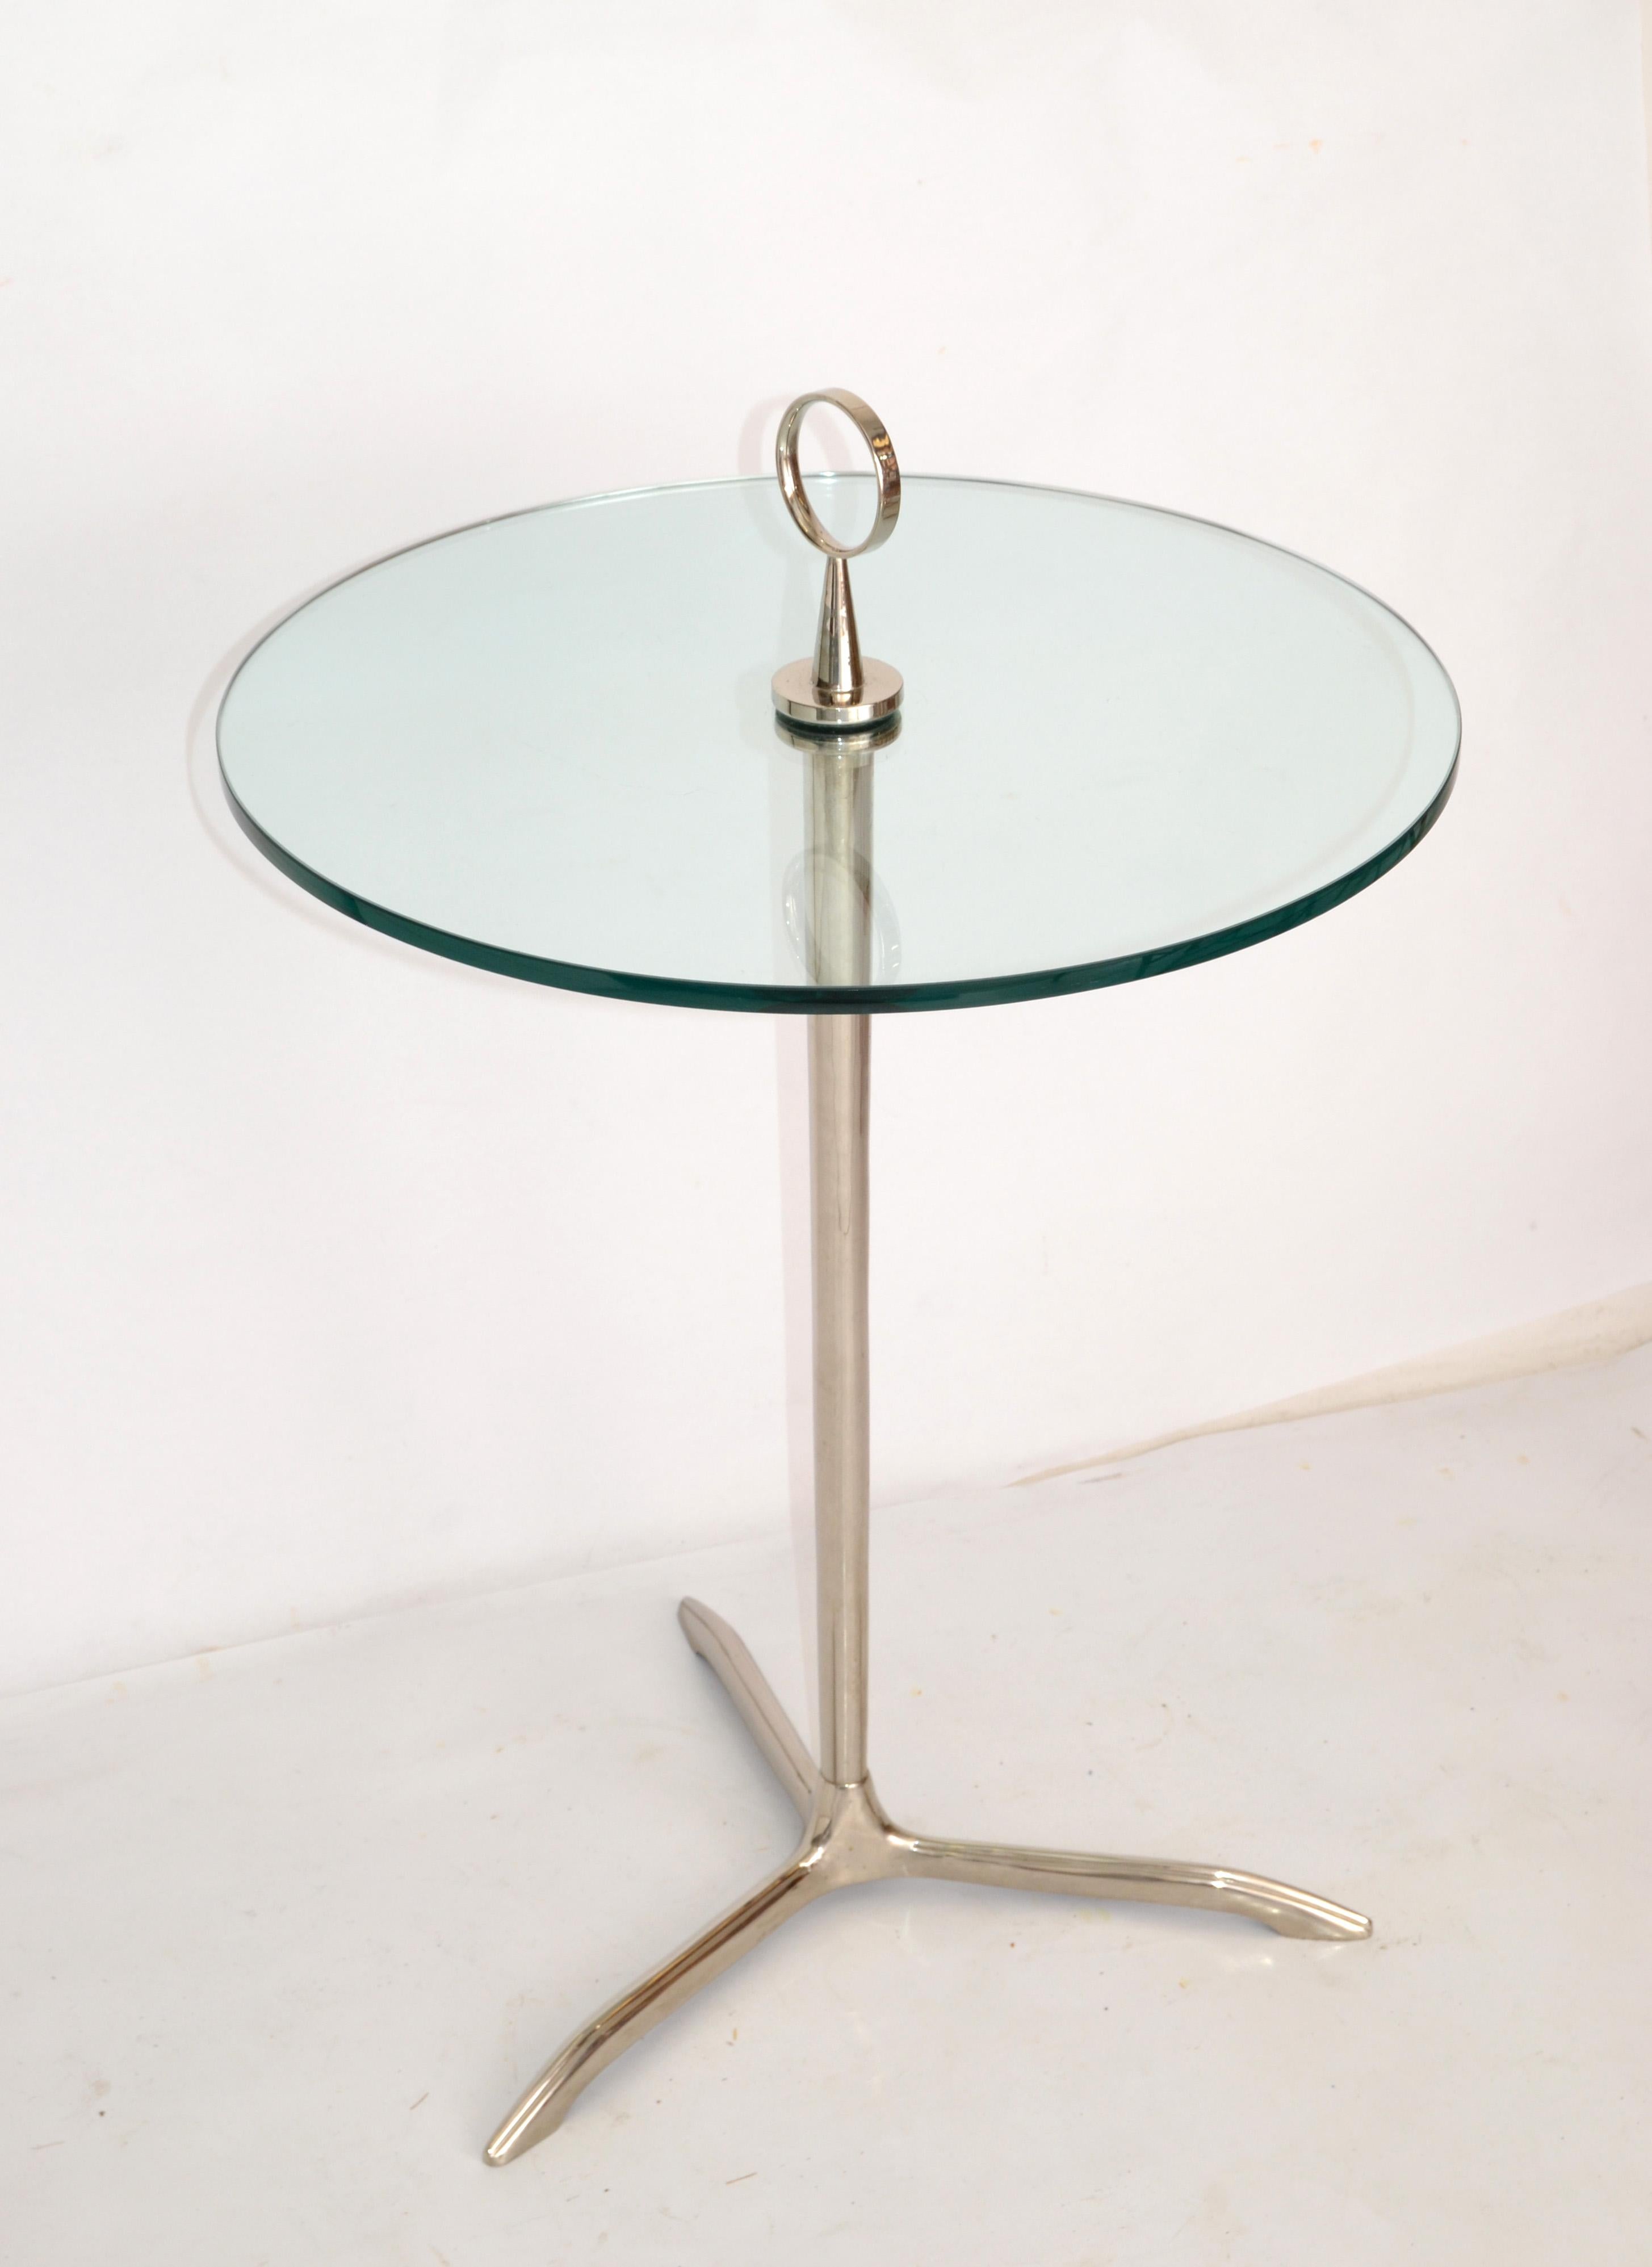 Table d'appoint, d'extrémité ou à boissons, minimaliste et élégante, de style moderne du milieu du siècle, attribuée à Cesar Lacca et conçue en Italie dans les années 1950.
Il est fabriqué en acier inoxydable avec une finition polie et est livré